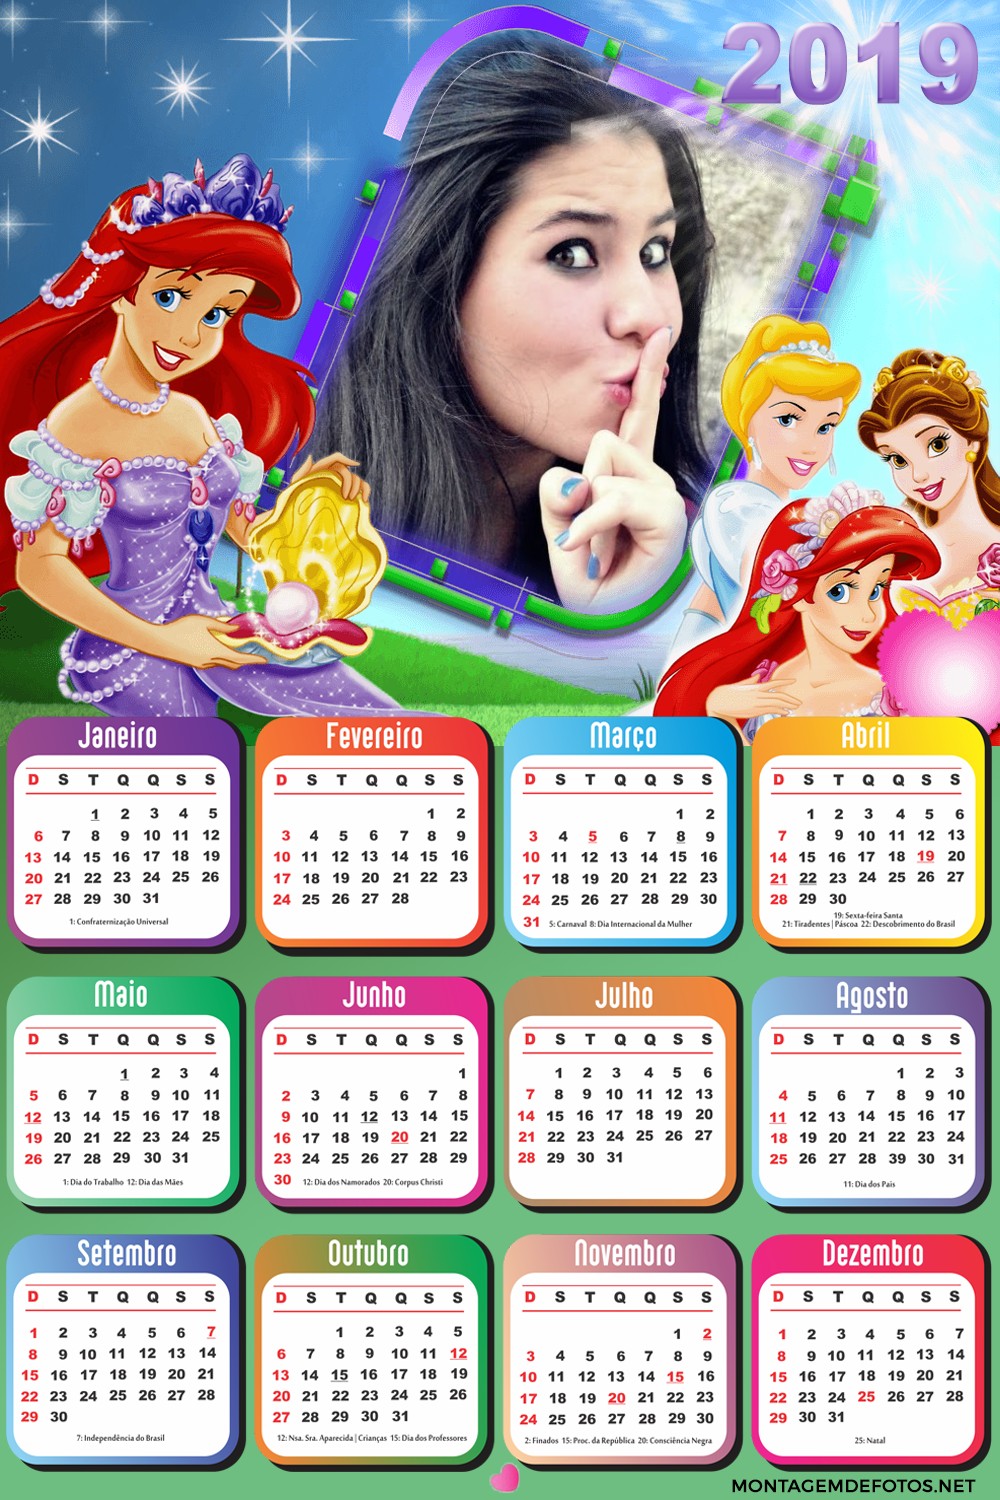 montagem-de-fotos-calendario-2019-princesas-disney